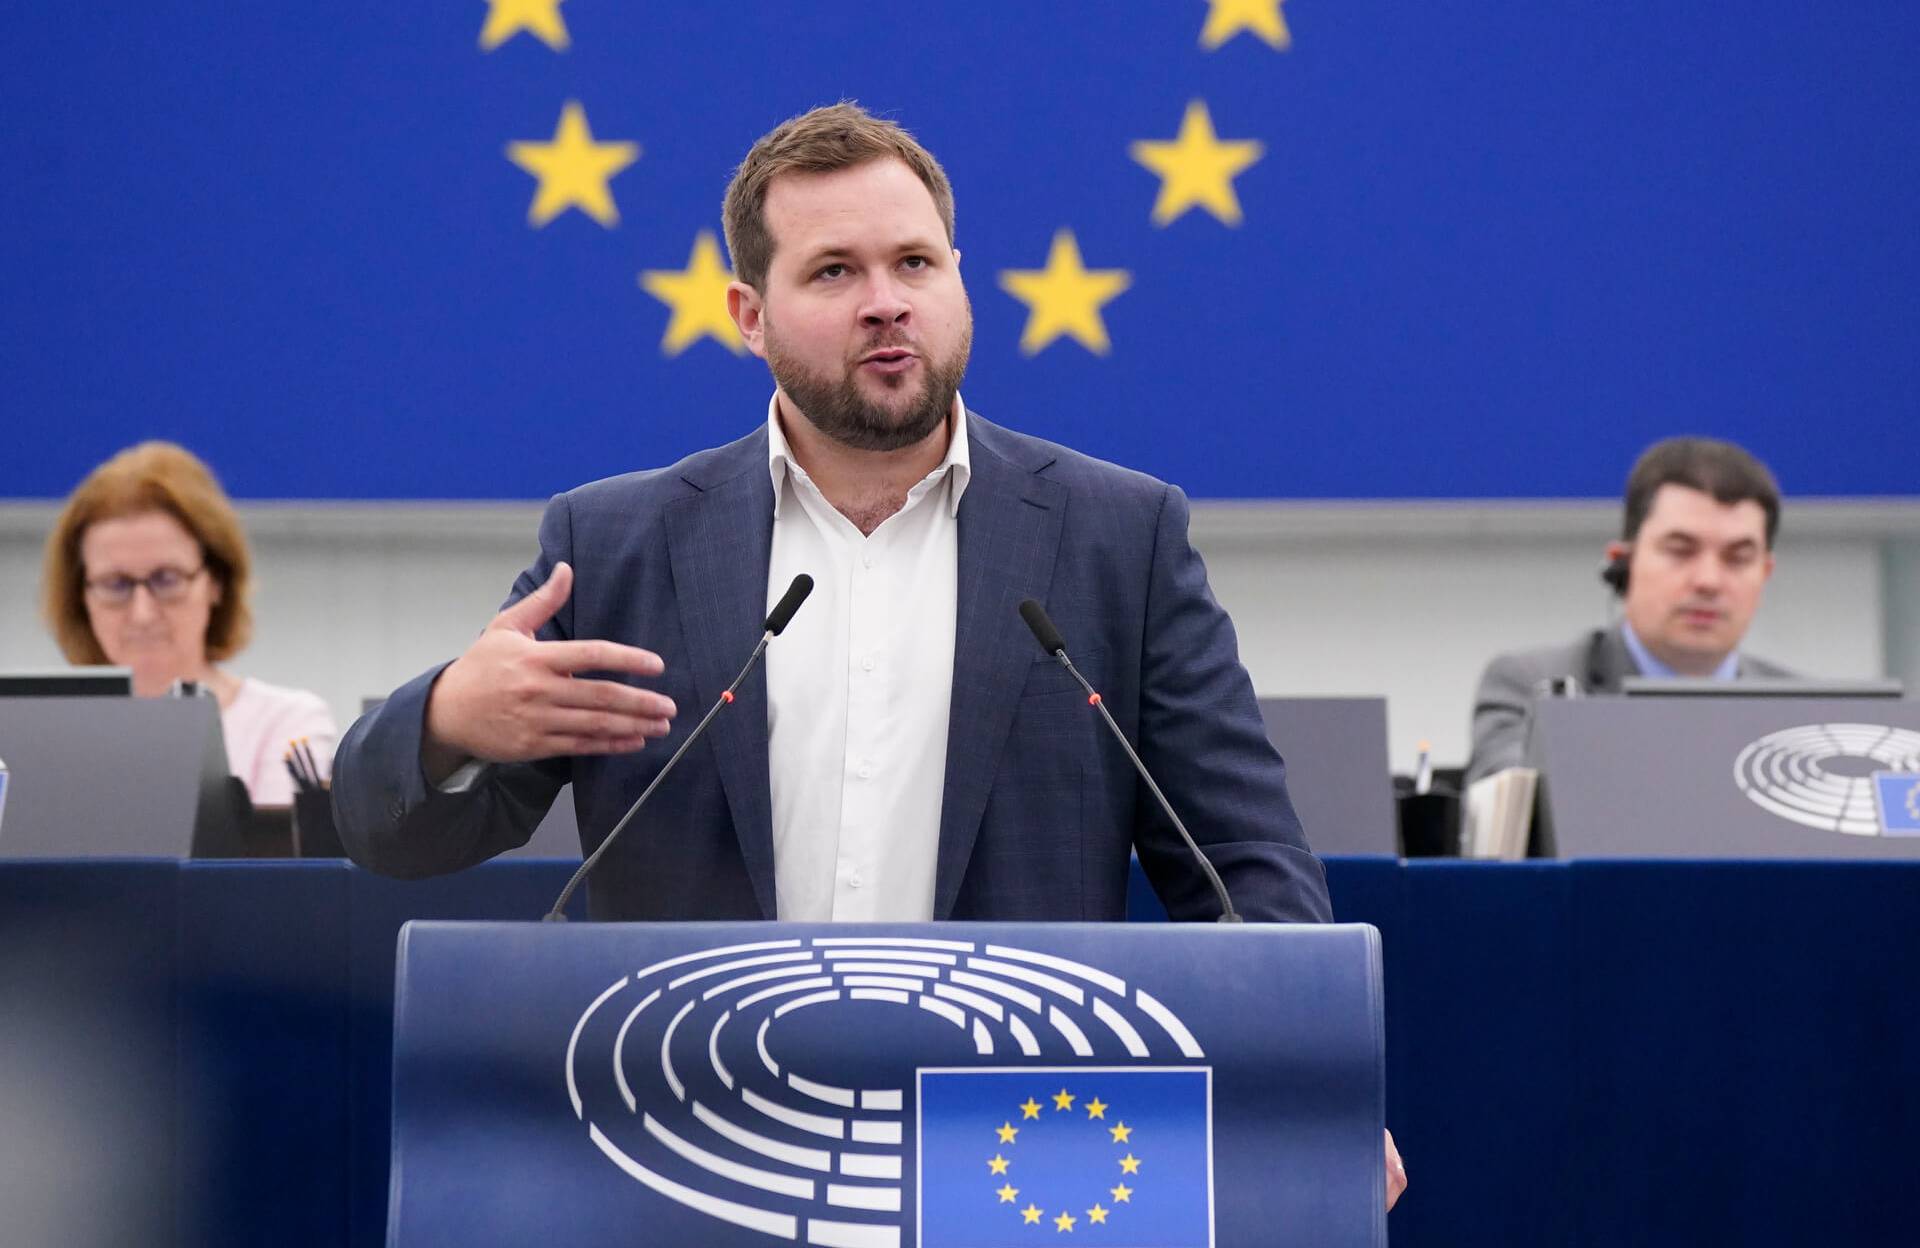 Mężczyzna z krótkimi włosami ciemny blond i krótką brodą stoi za mównicą w sali plenarnej Parlamentu Europejskiego, w tle za nim europejska flaga z gwiazdkami, gestykuluje prawą ręką i przemawia do zebranych europosłów.